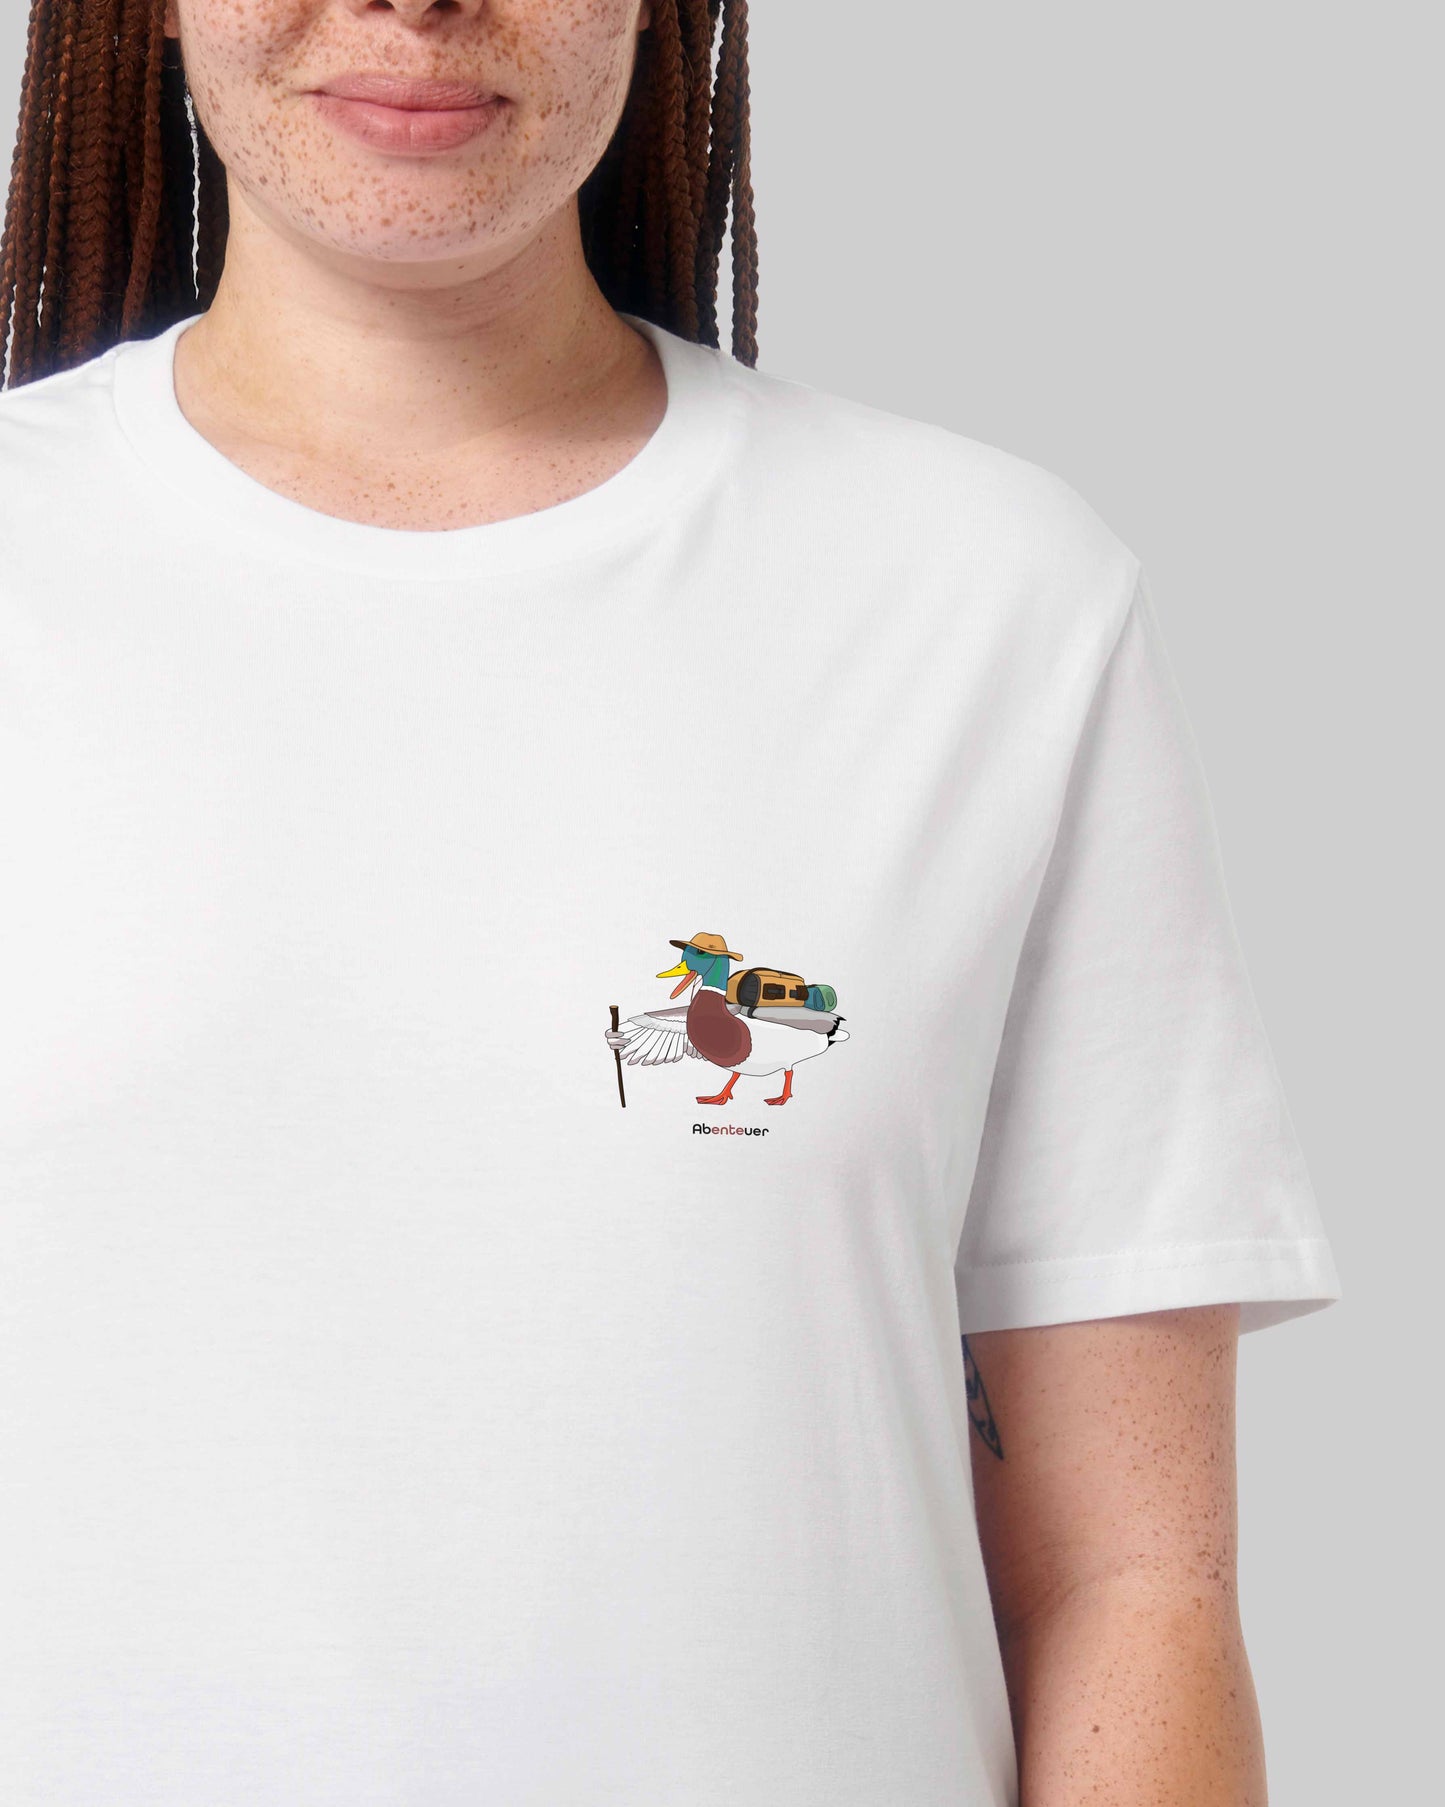 EINHORST® unisex Organic Shirt in Weiß mit dem Motiv "Abenteuer", Bild von weiblicher Person mit Shirt